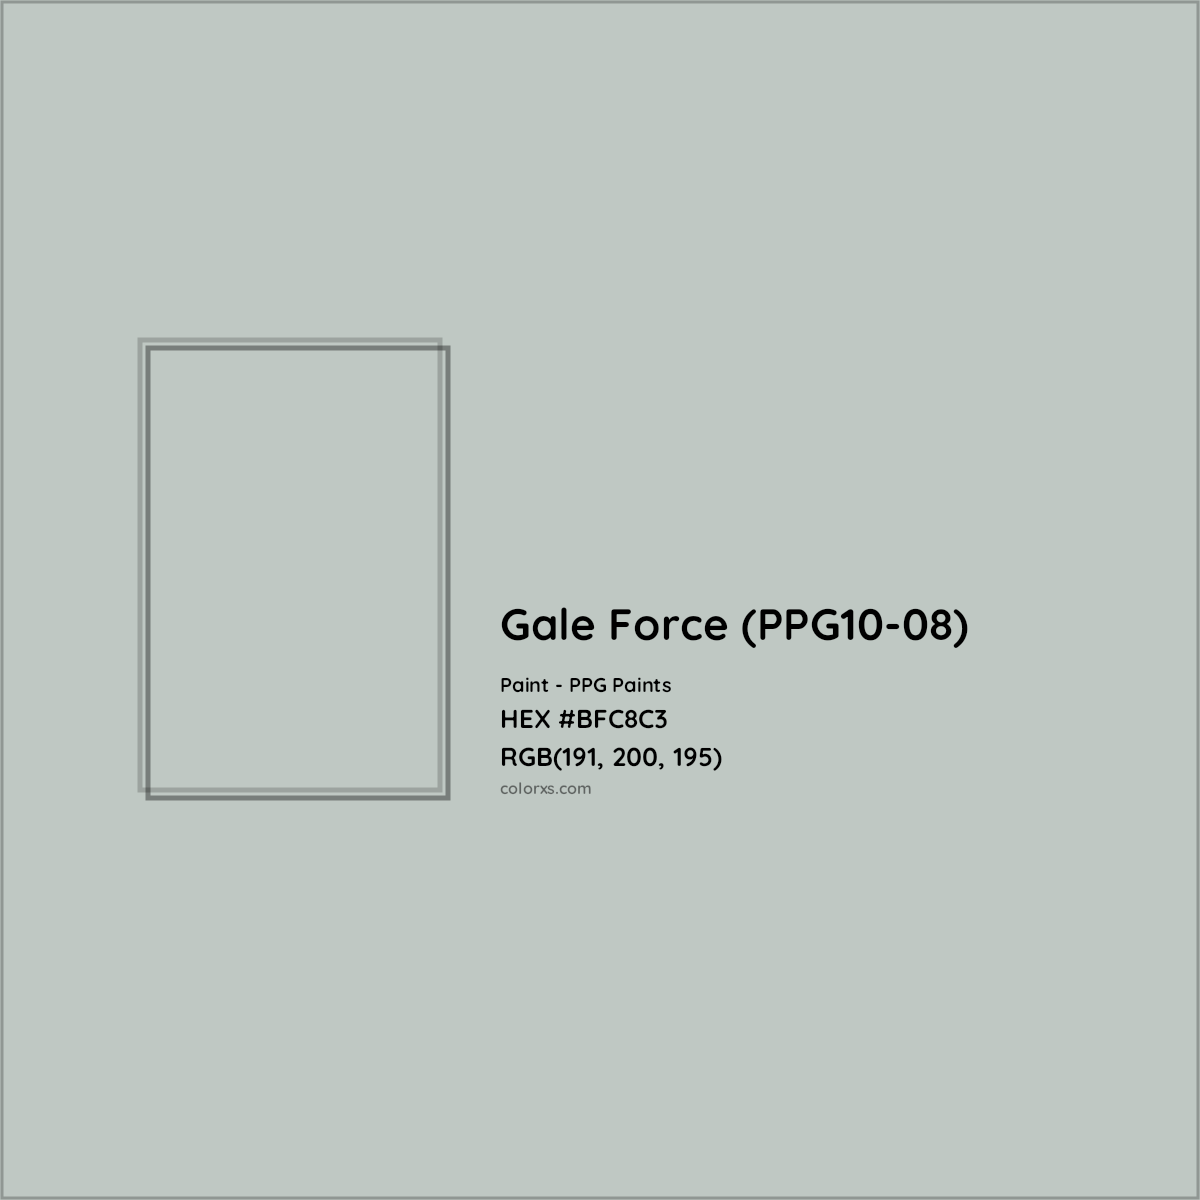 HEX #BFC8C3 Gale Force (PPG10-08) Paint PPG Paints - Color Code